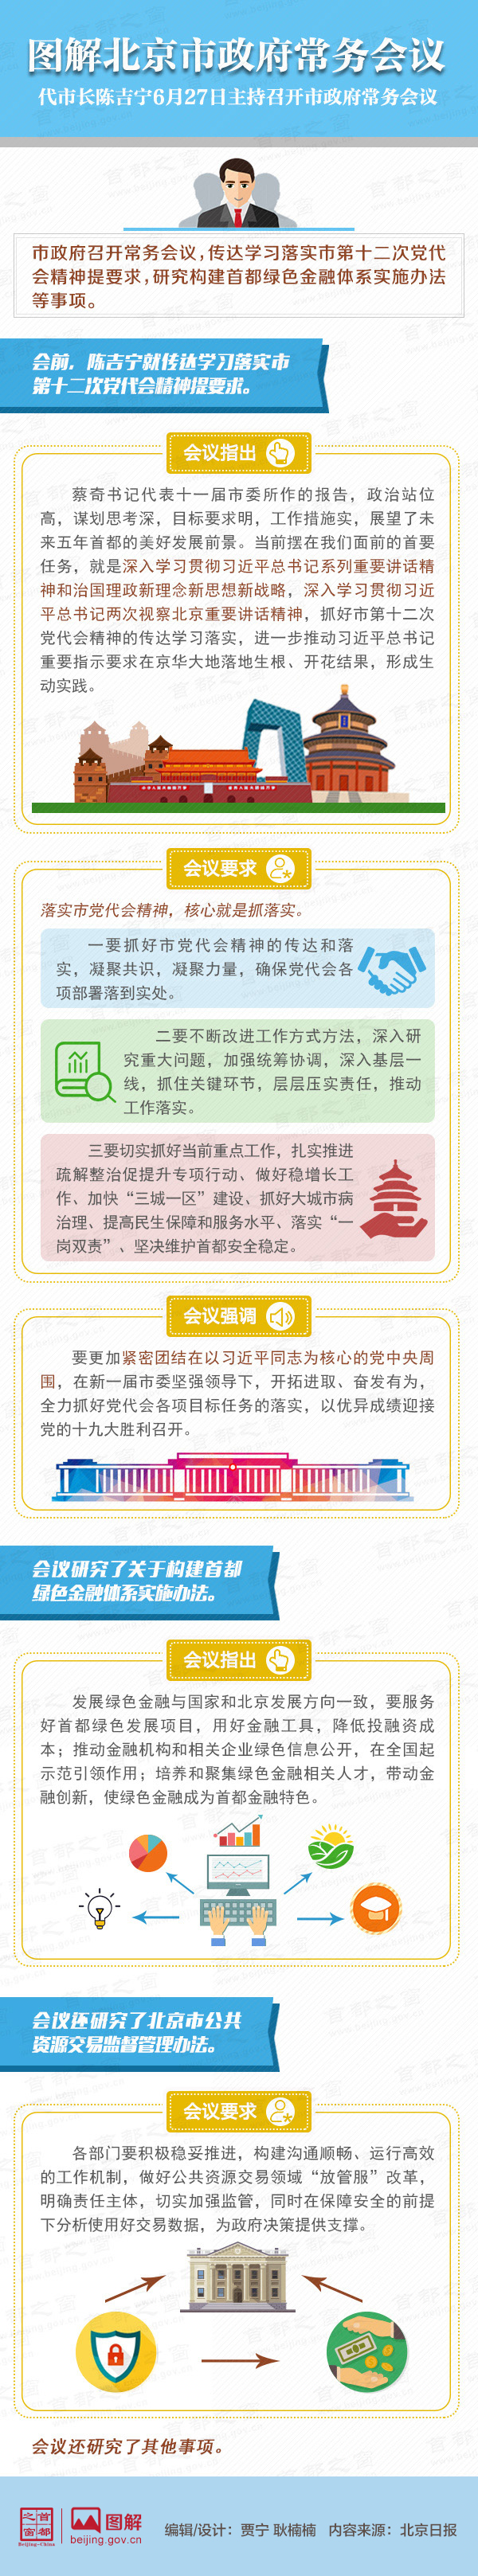 圖解2017年6月27日北京市政府常務會議